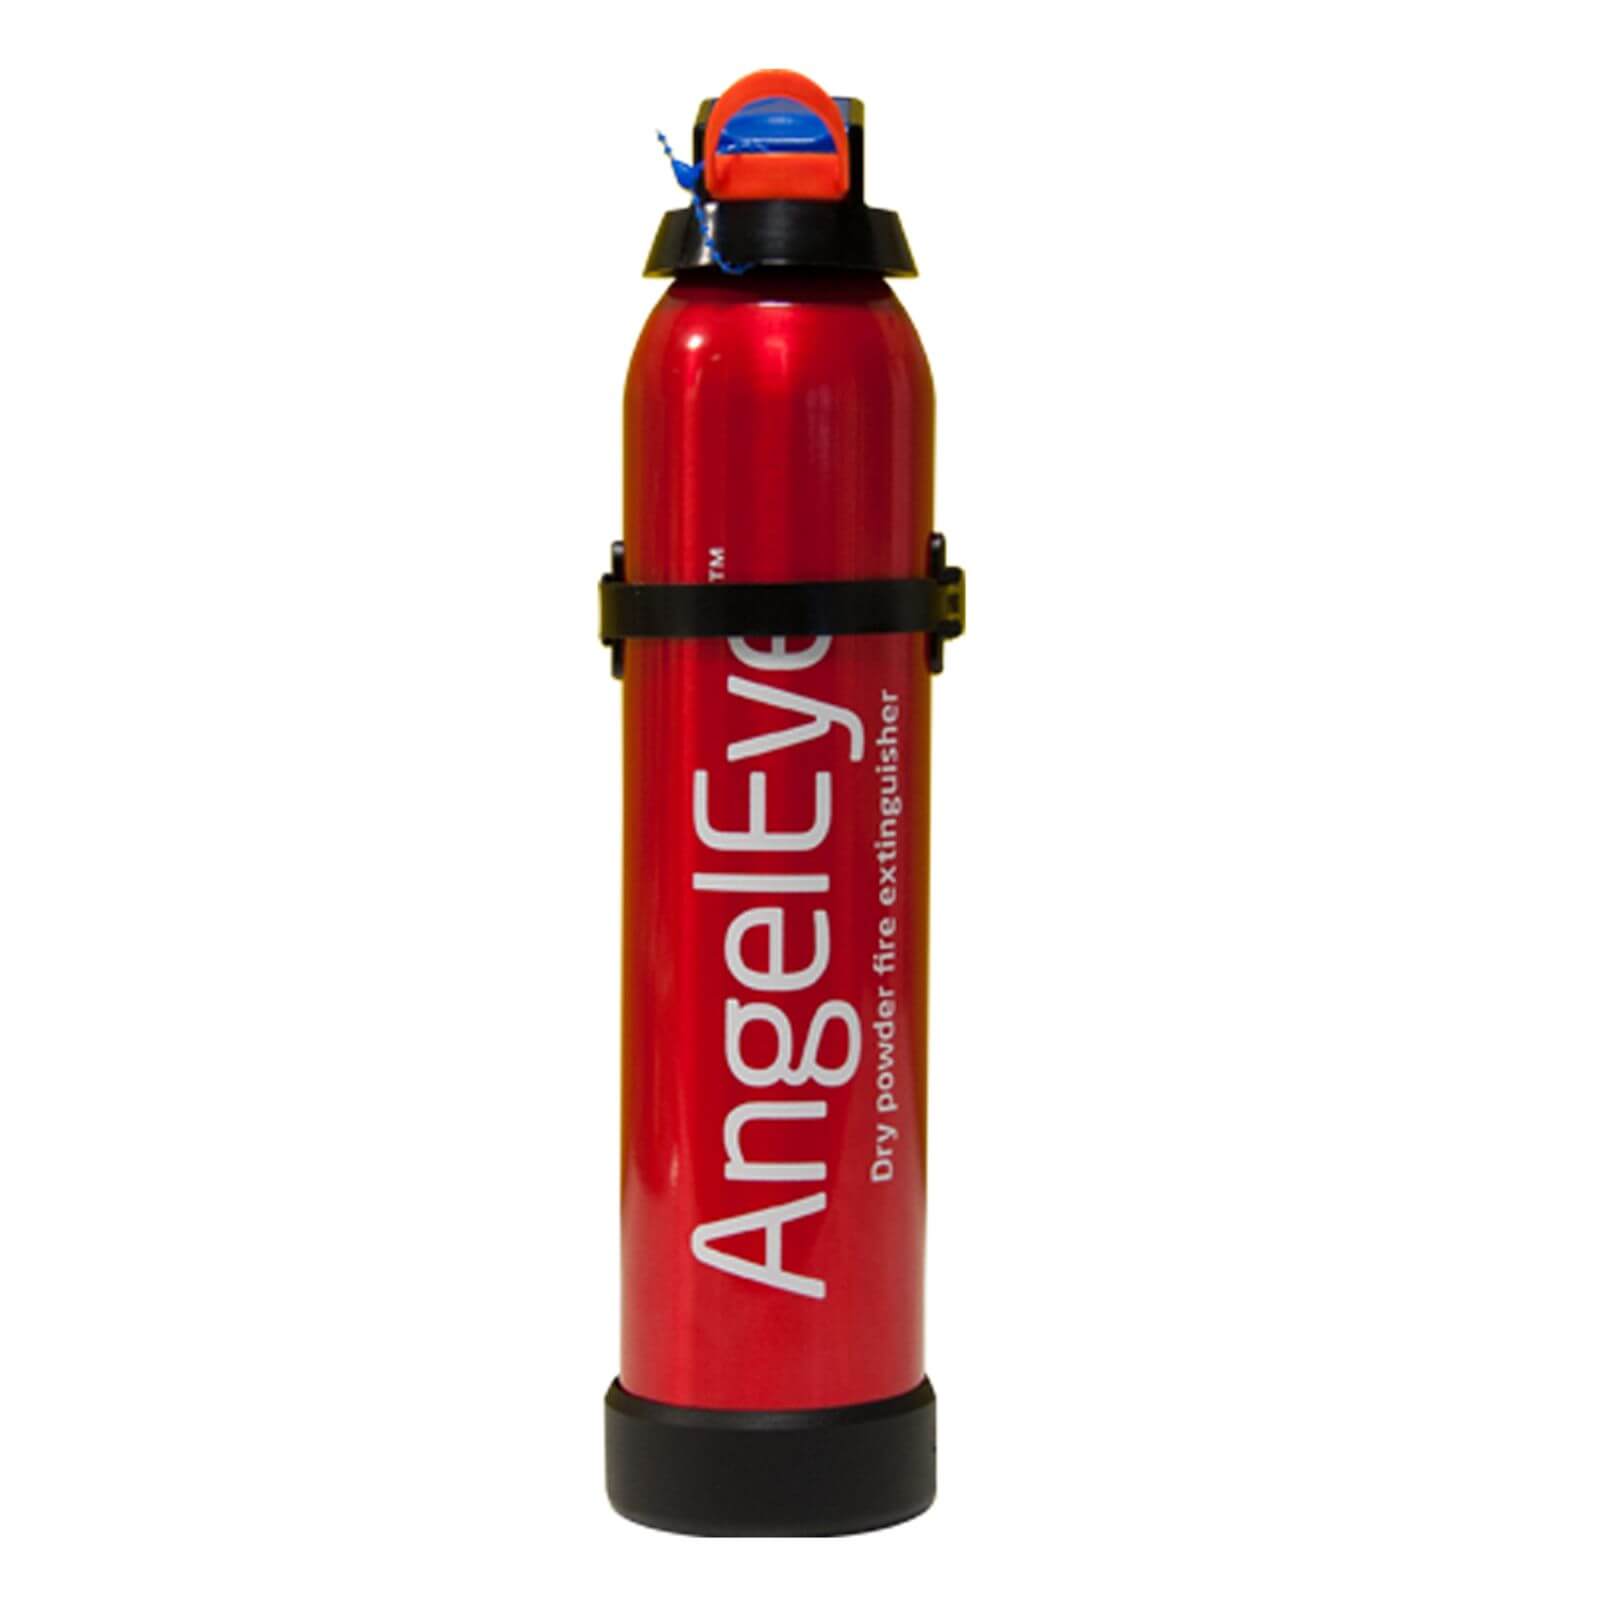 FireAngel Fire Extinguisher 600g